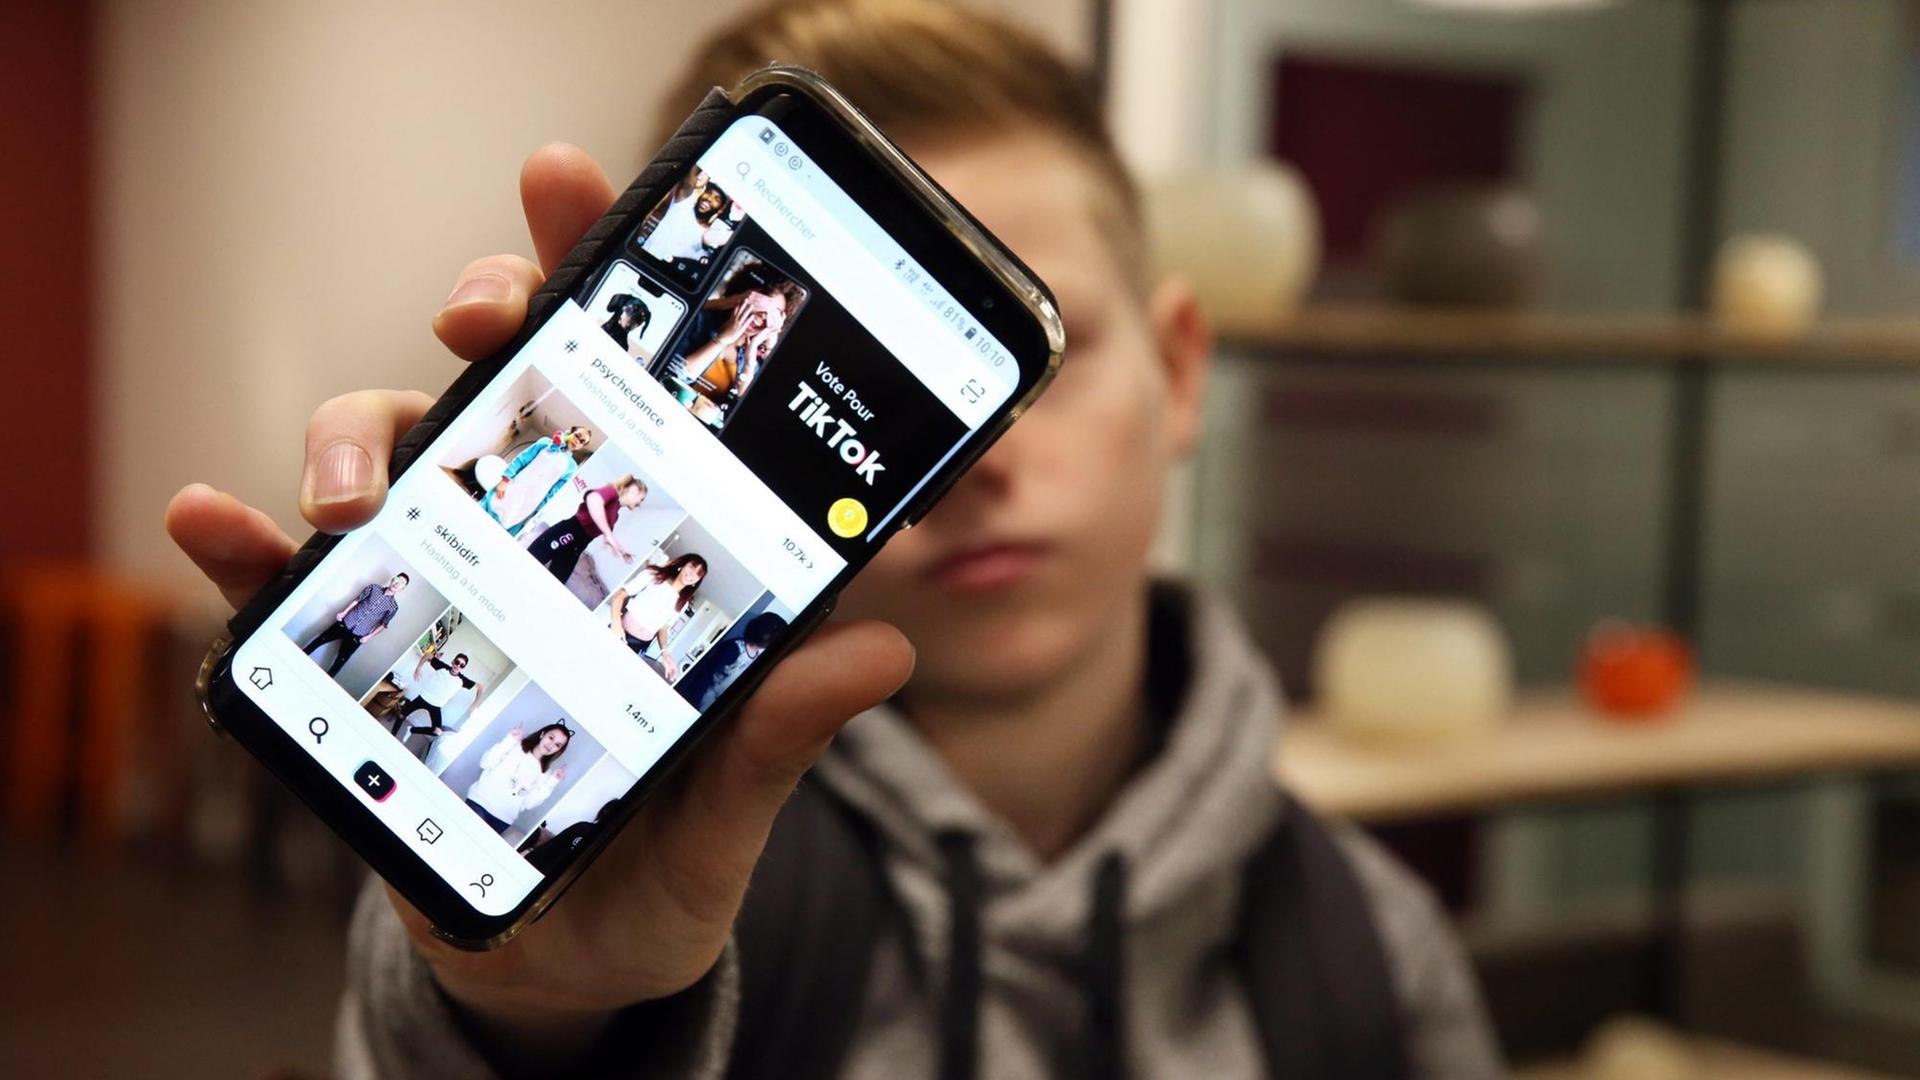 Ein Junge hält sein Smartphone in die Kamera, auf dem die App TikTok geöffnet ist